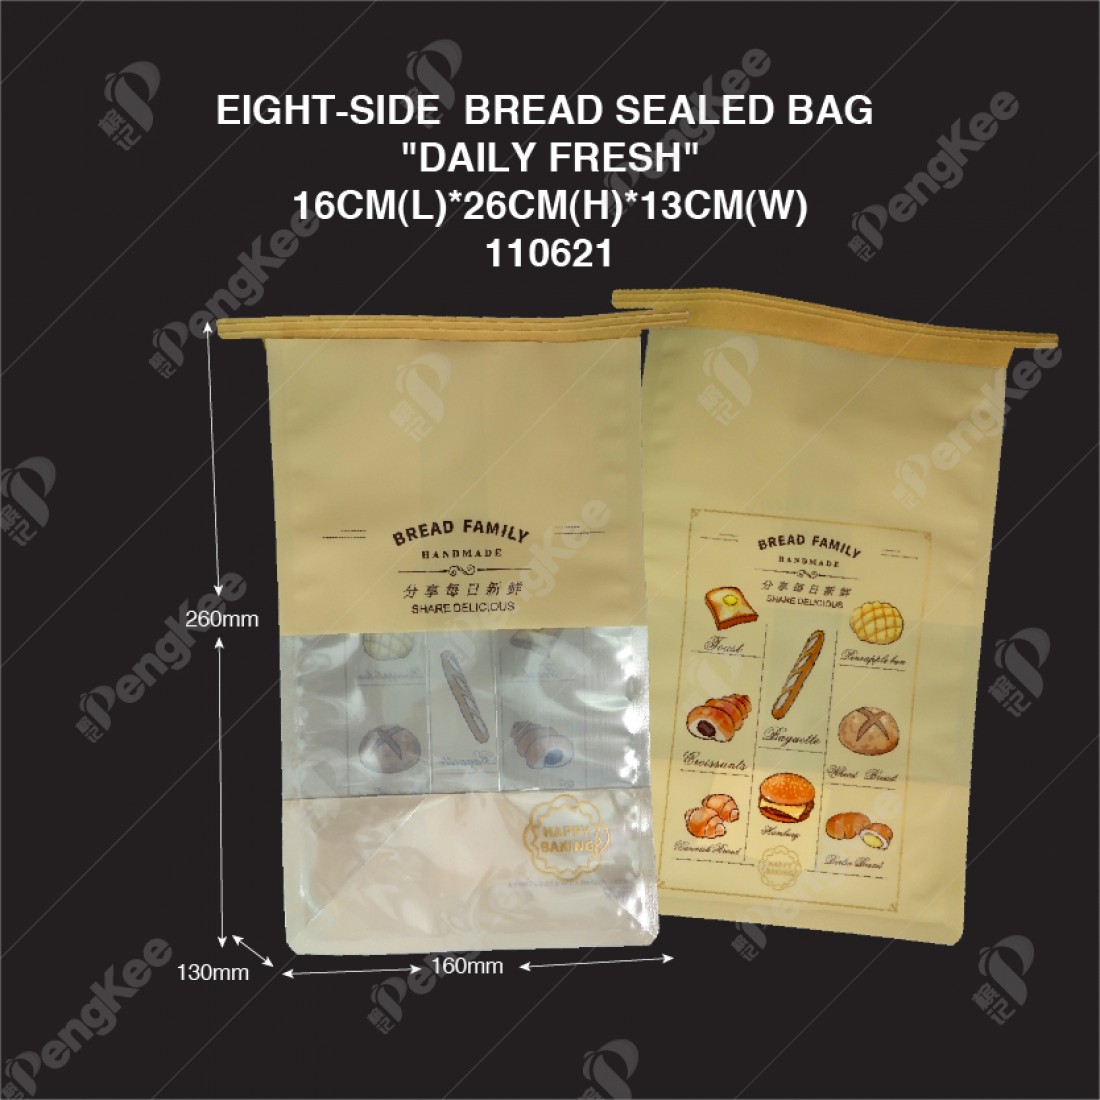 EIGHT-SIDE  BREAD SEALED BAG "DAILY FRESH"16CM(L)*26CM(H)*13CM(W) (CM)50'S